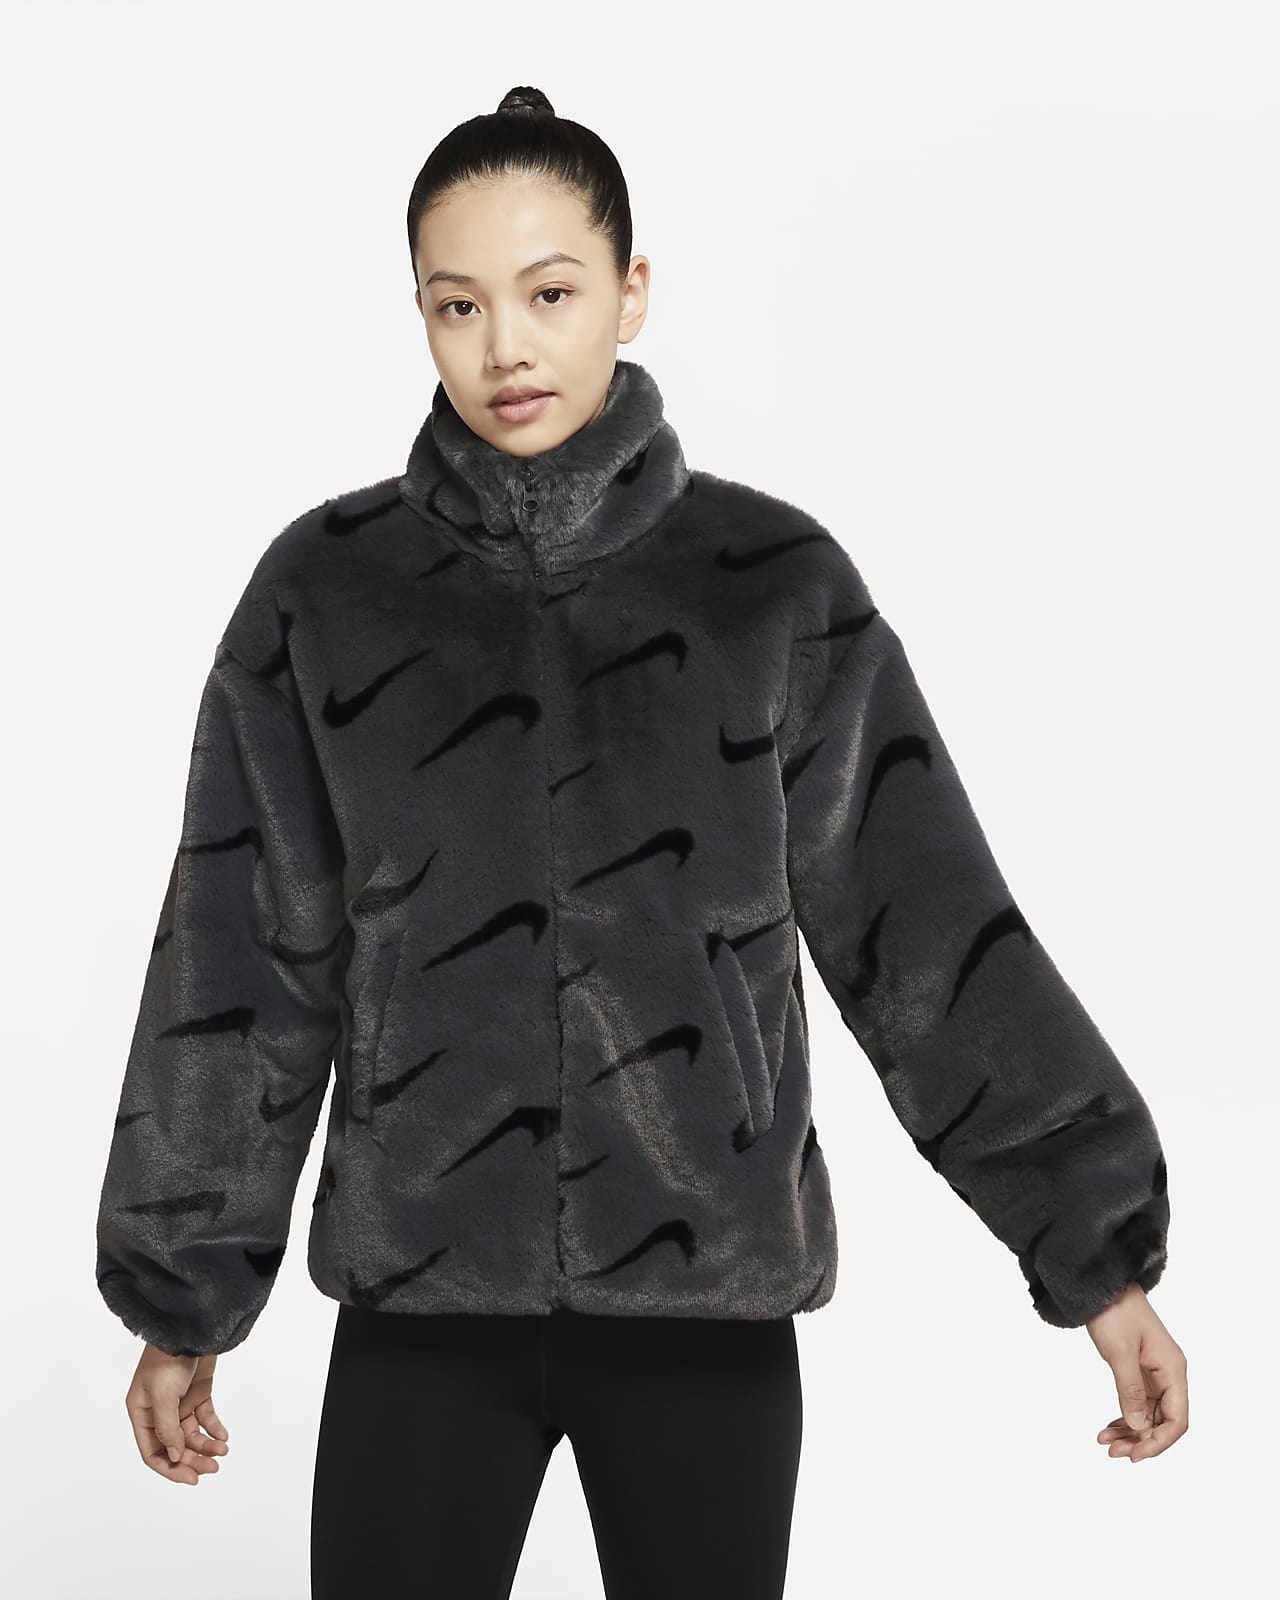 New! Nike Sportswear Sherpa Burgundy Faux Fur Bomber Jacket Women's Small S  